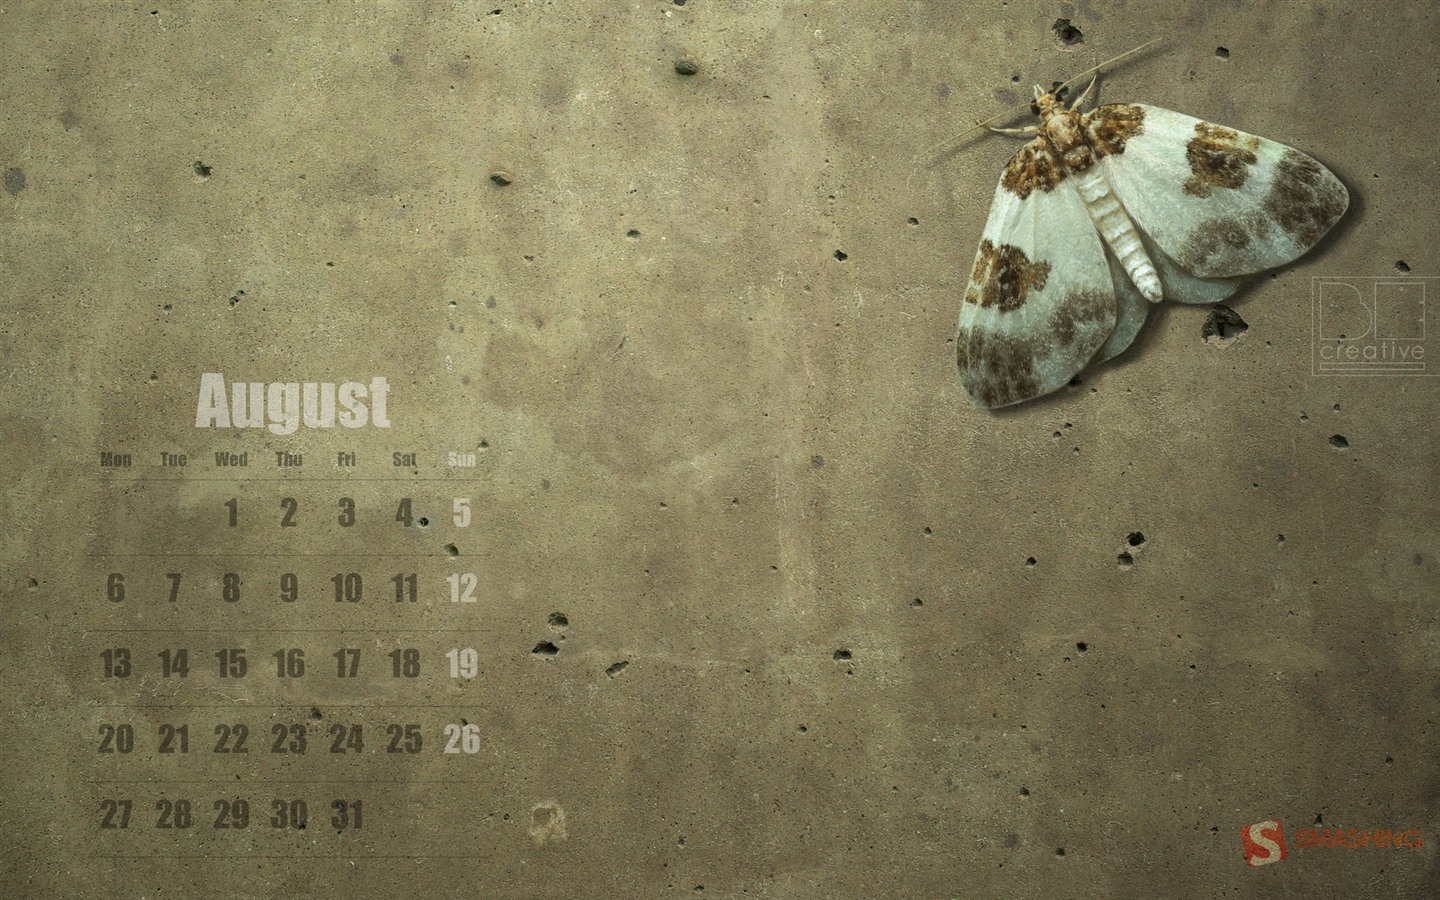 August 2012 Calendar wallpapers (1) #19 - 1440x900